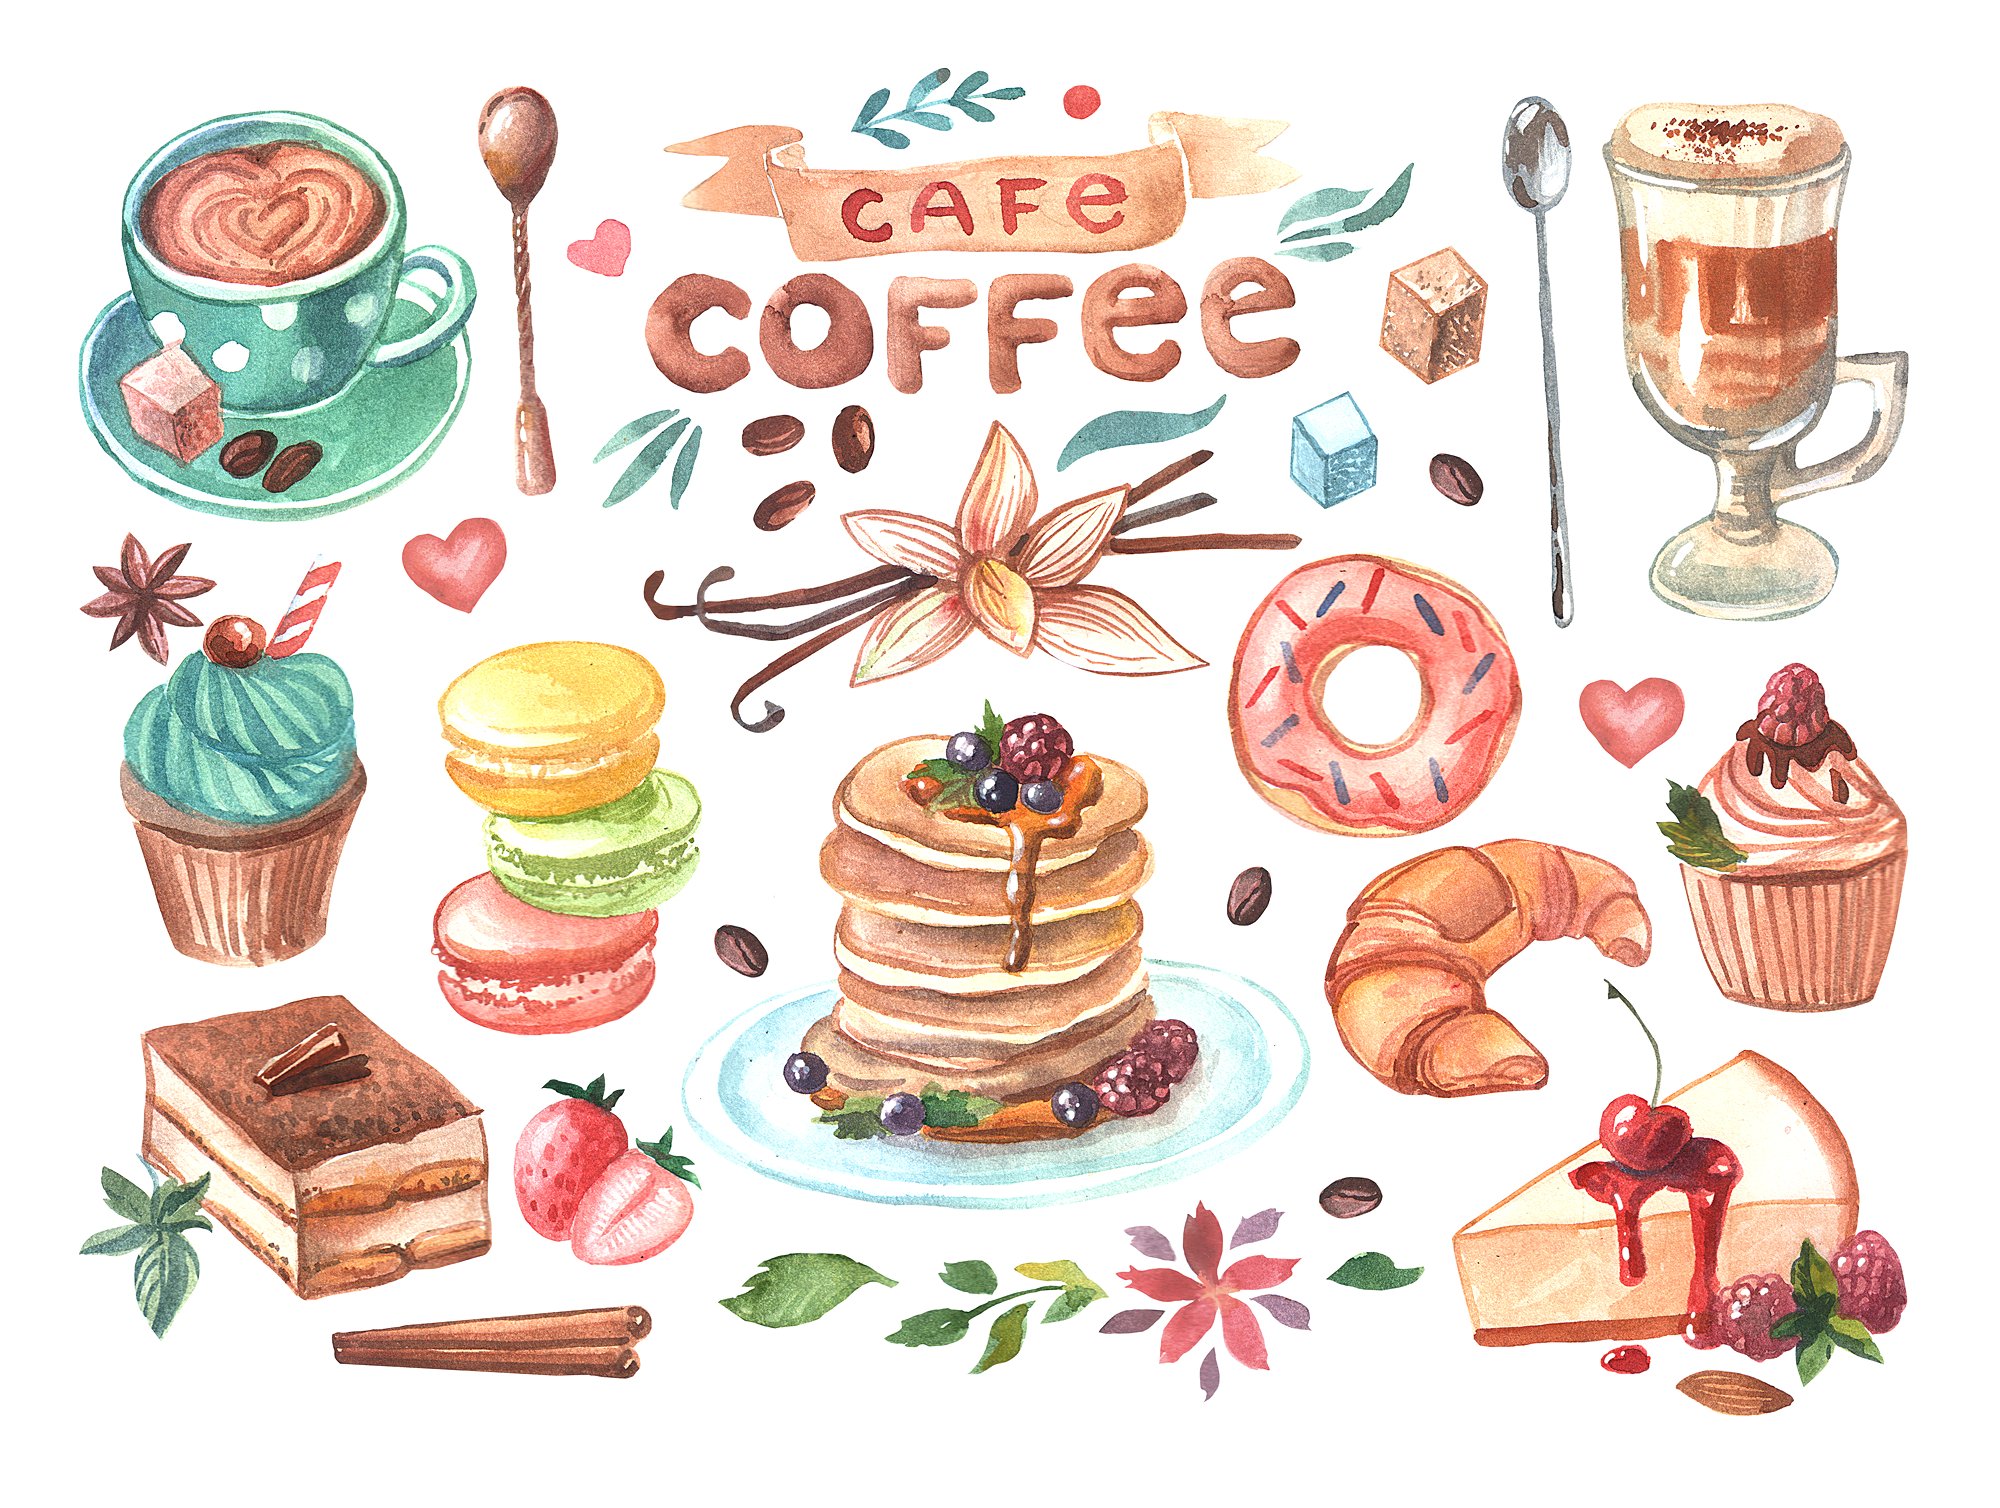 高质量的手绘水彩画咖啡&甜品图集下载[psd,png,jpg]插图(1)